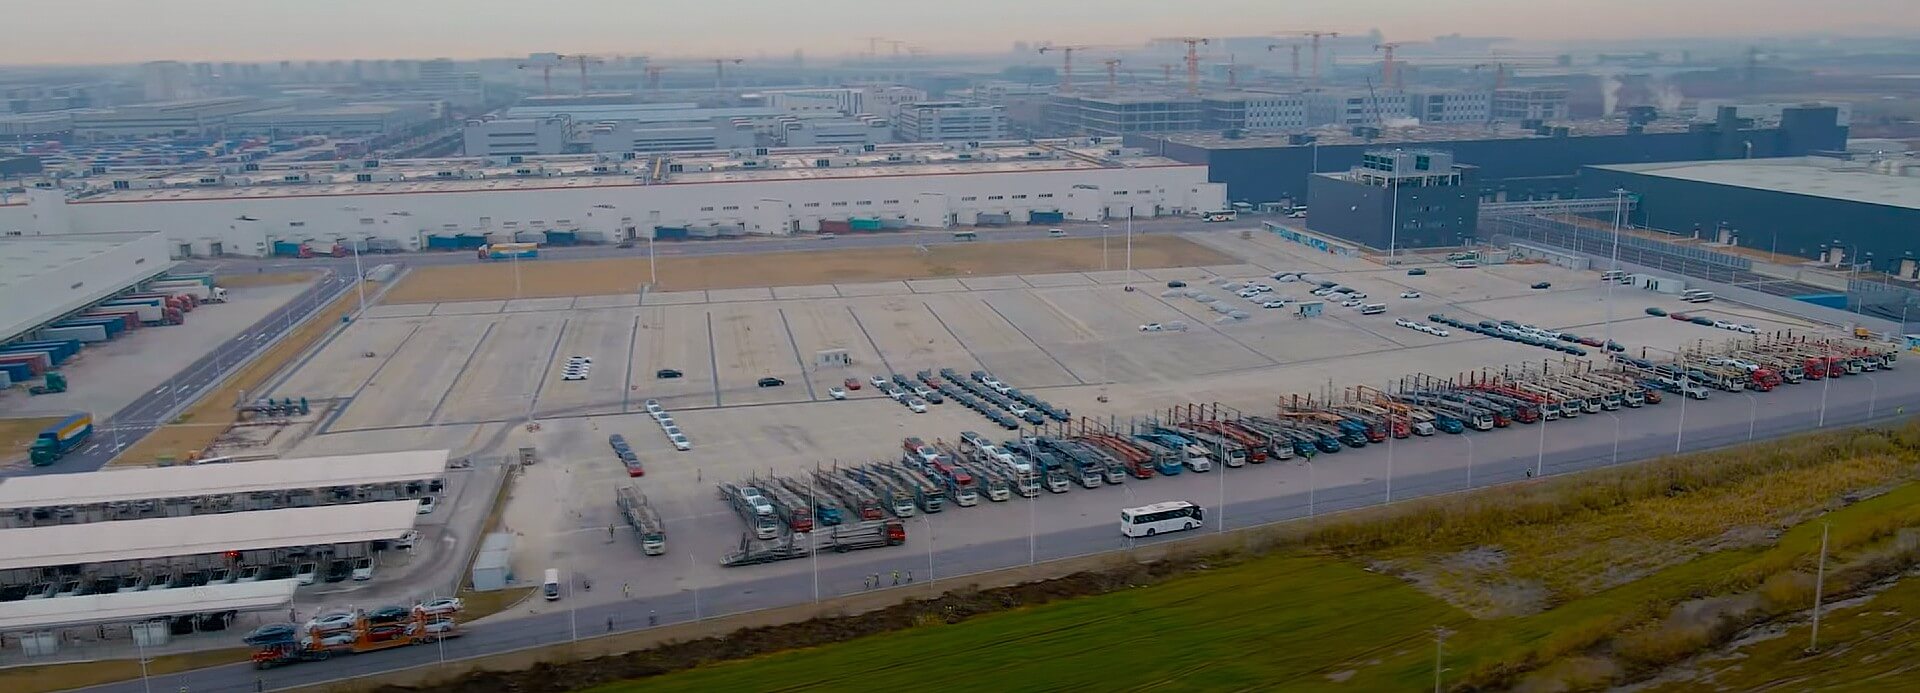 Tesla Giga Shanghai штурмуют грузовики доставки, поскольку производство возобновляется